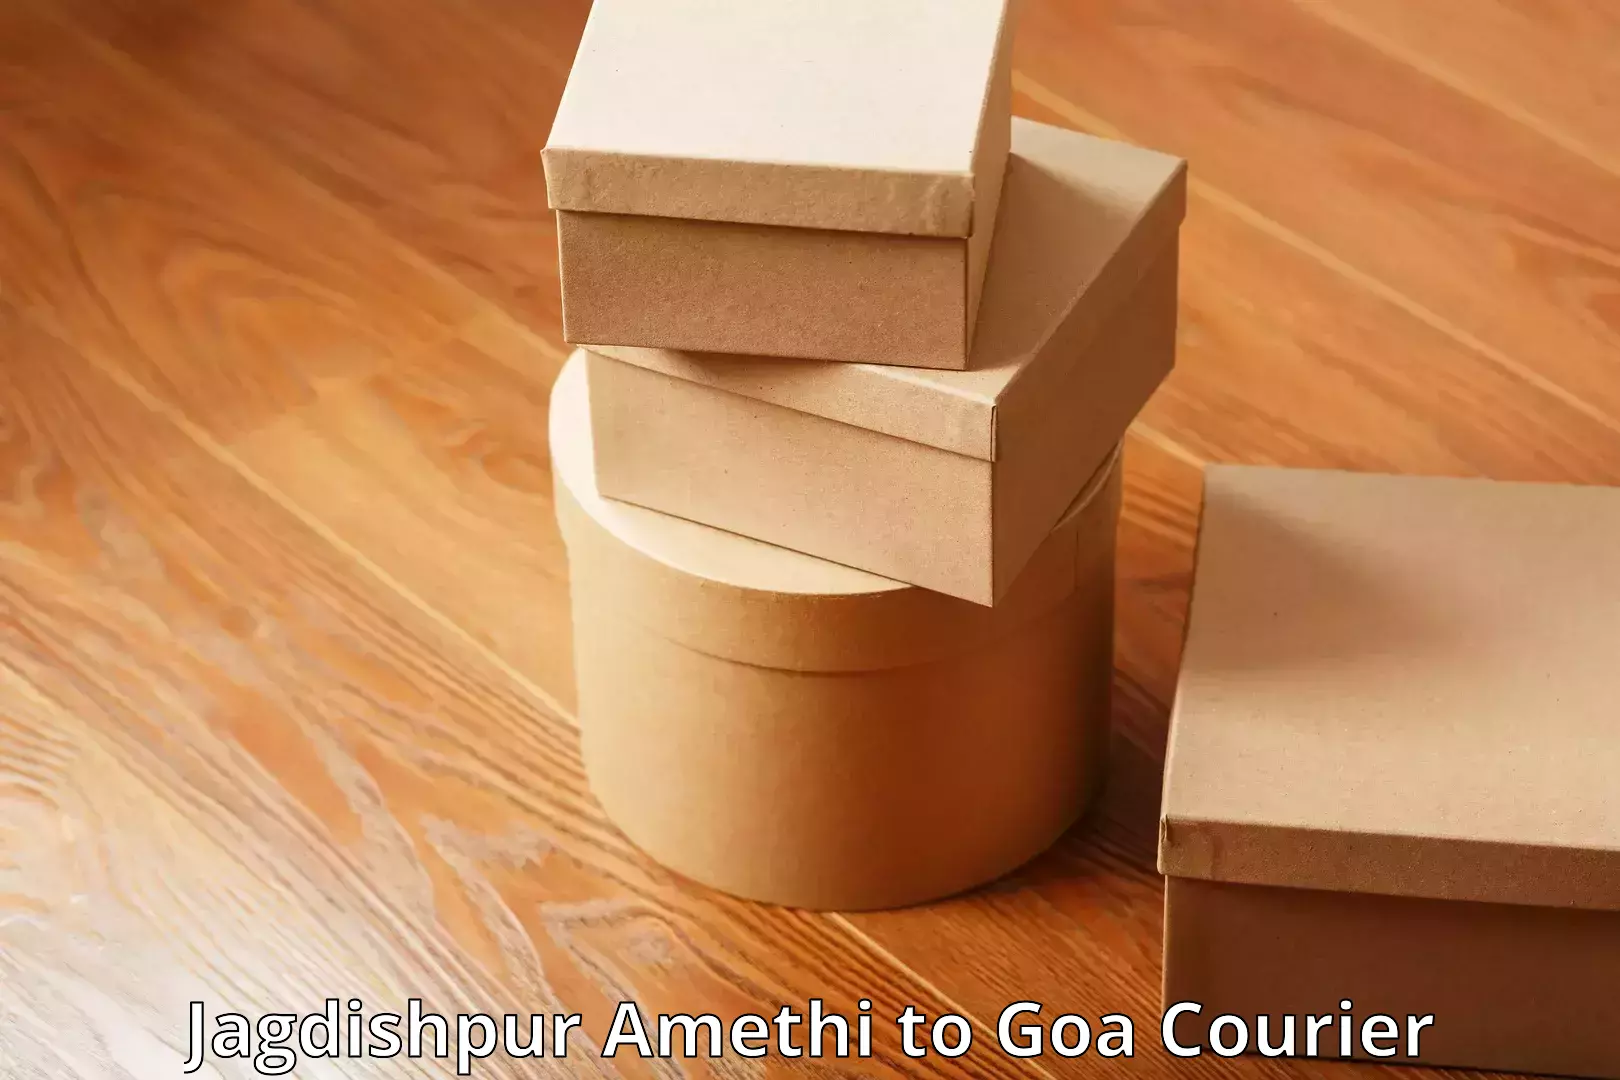 Luggage shipment specialists Jagdishpur Amethi to Goa